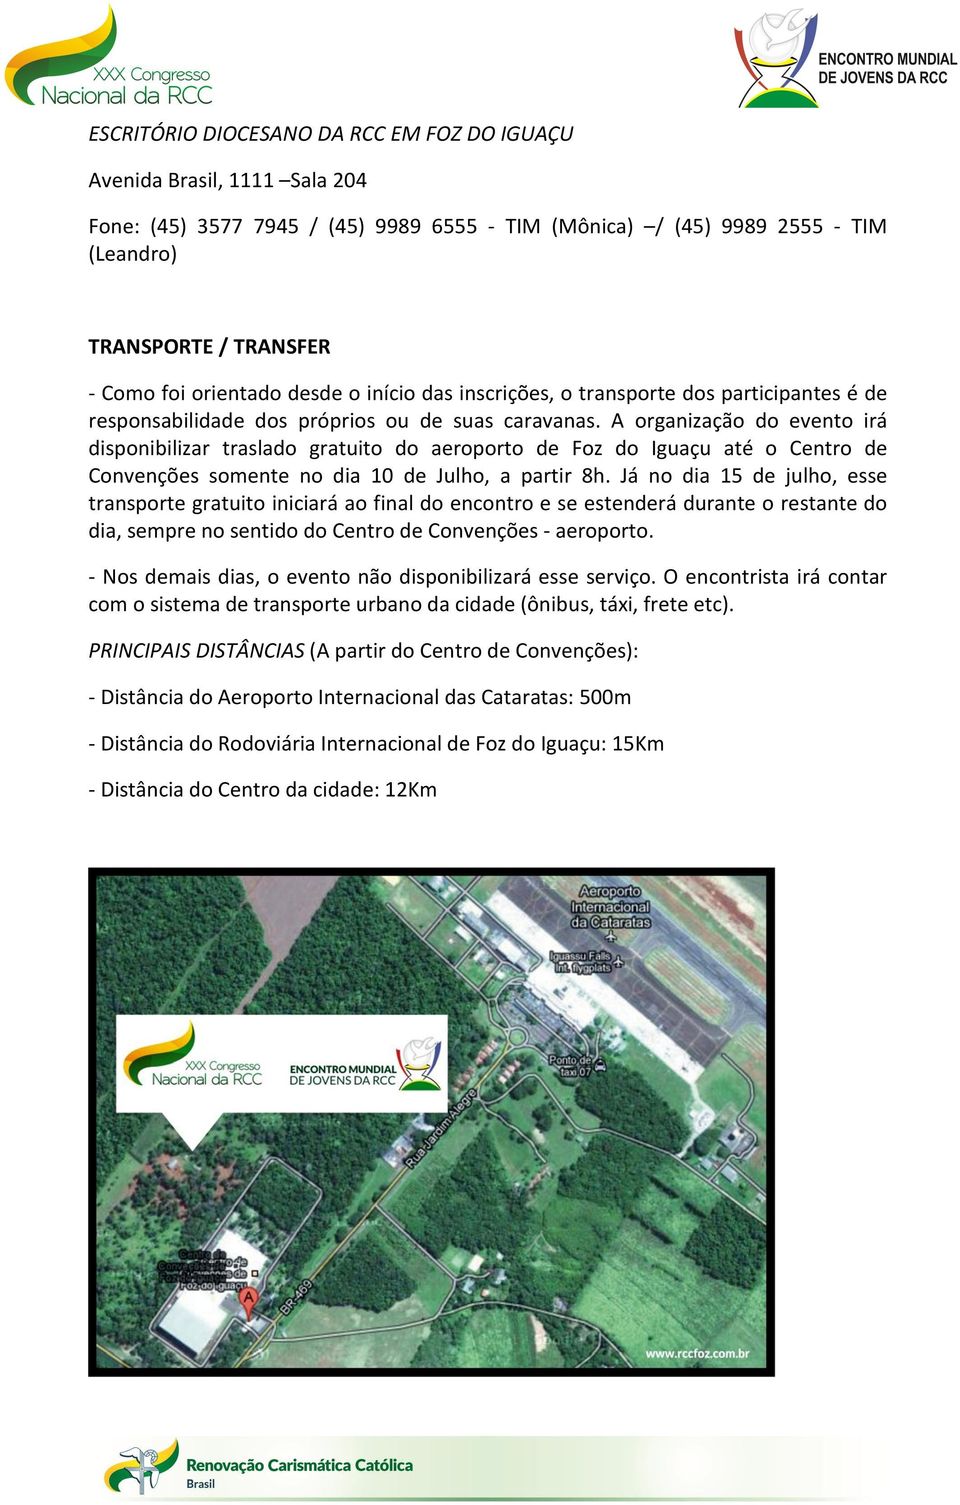 A organização do evento irá disponibilizar traslado gratuito do aeroporto de Foz do Iguaçu até o Centro de Convenções somente no dia 10 de Julho, a partir 8h.